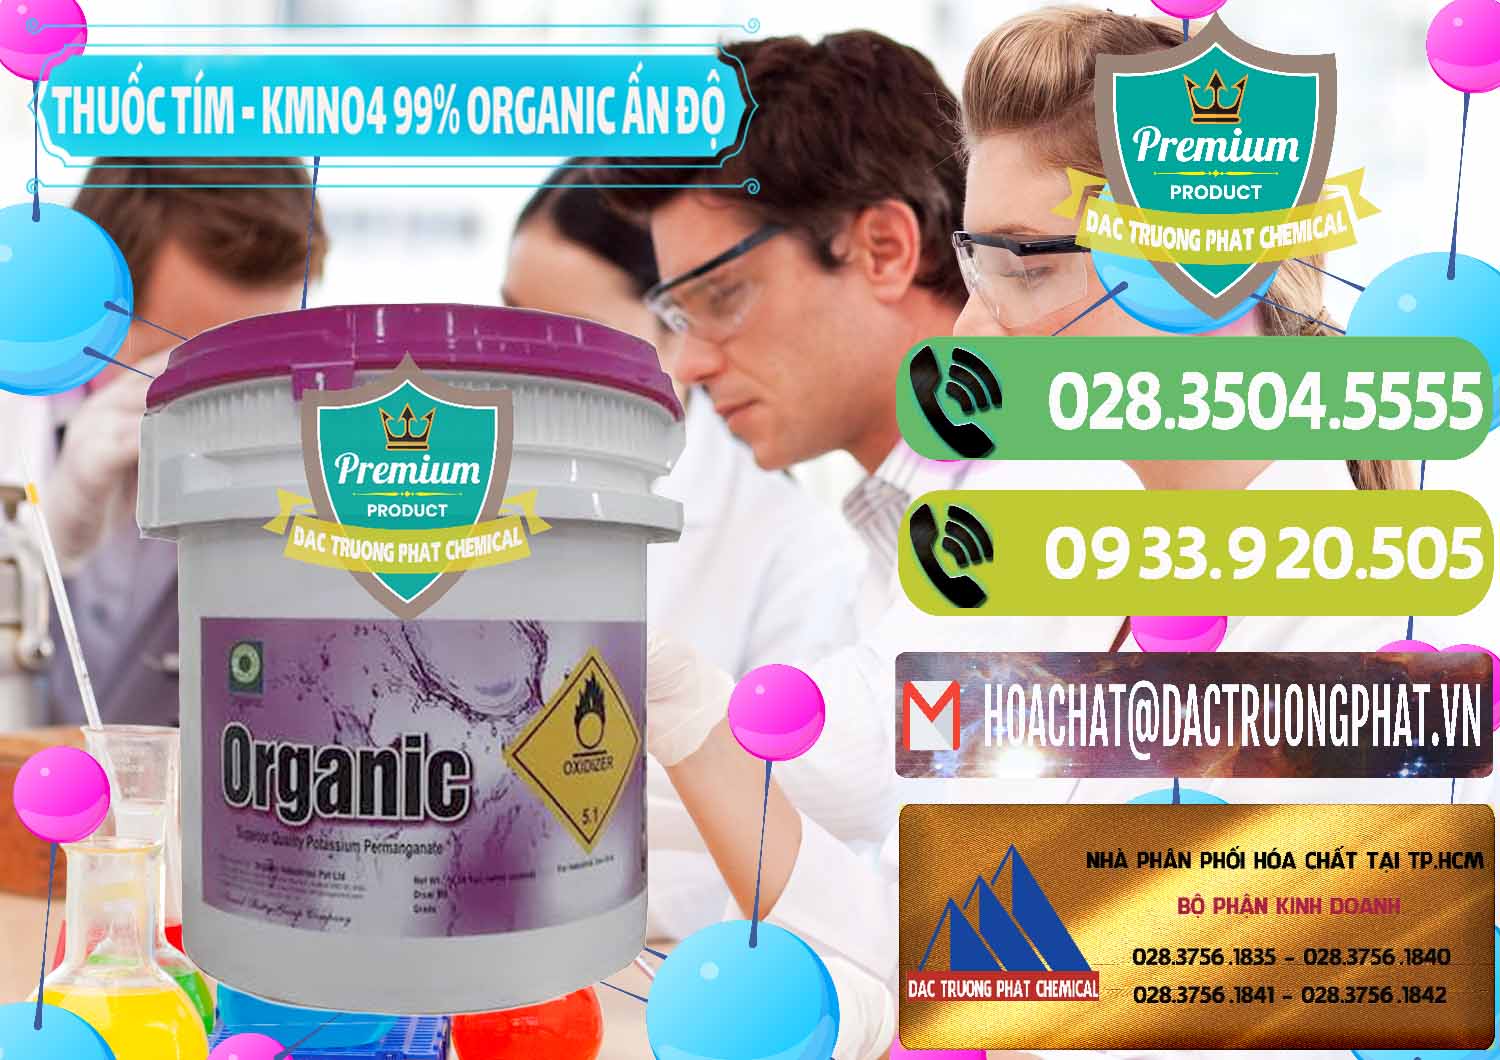 Cty chuyên bán - cung ứng Thuốc Tím - KMNO4 99% Organic Ấn Độ India - 0216 - Công ty chuyên nhập khẩu ( cung cấp ) hóa chất tại TP.HCM - hoachatmientay.vn